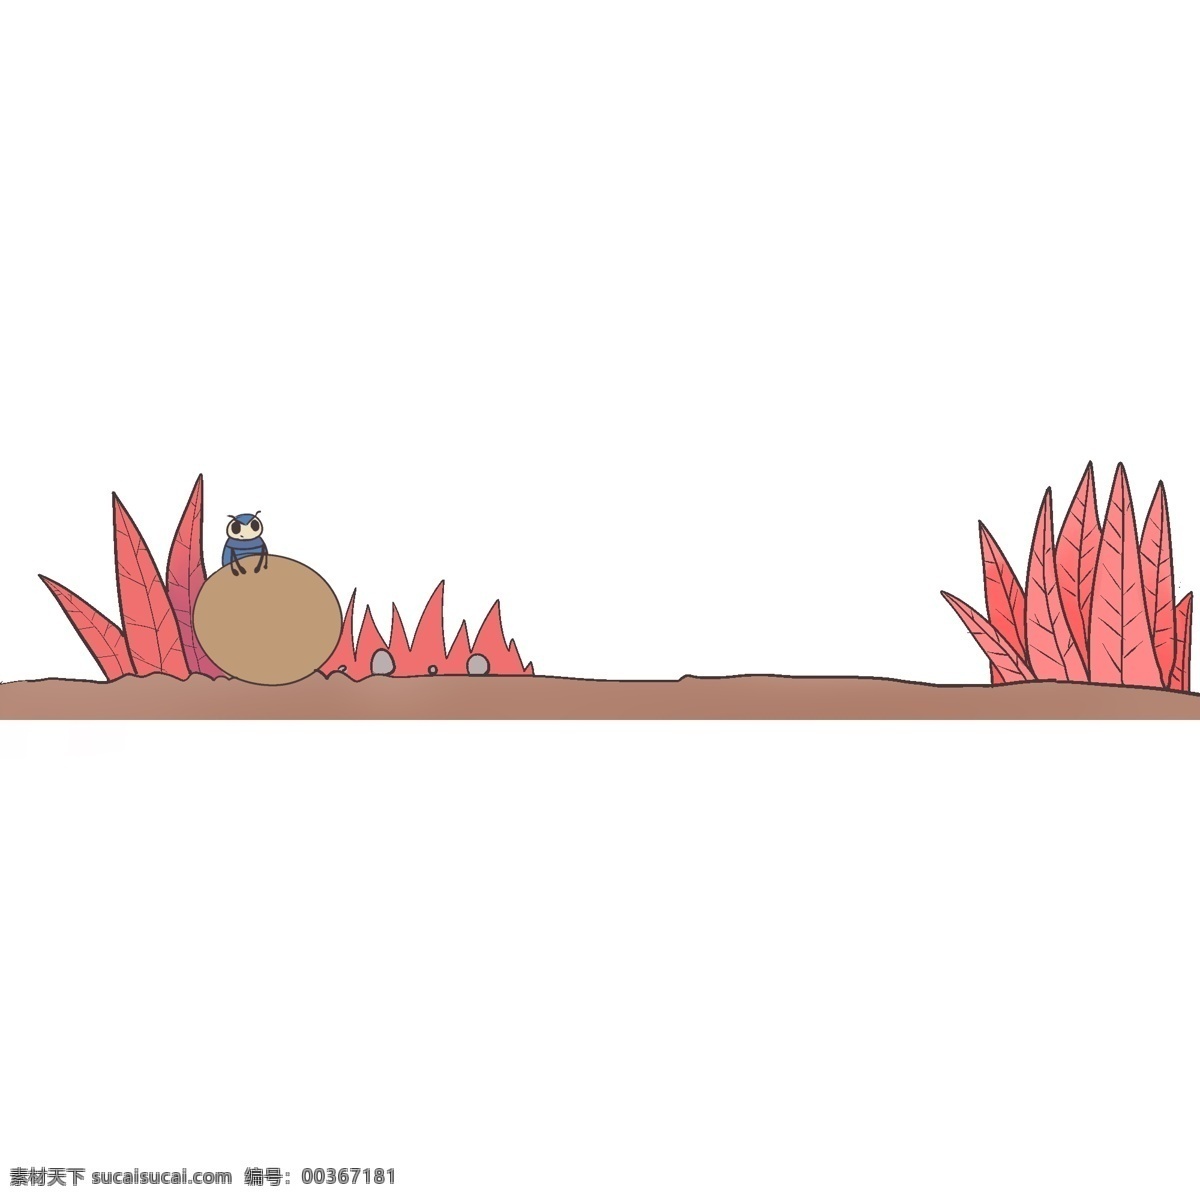 红色 植物 分割线 插画 手绘 卡通 装饰 动物分割线 分割线插画